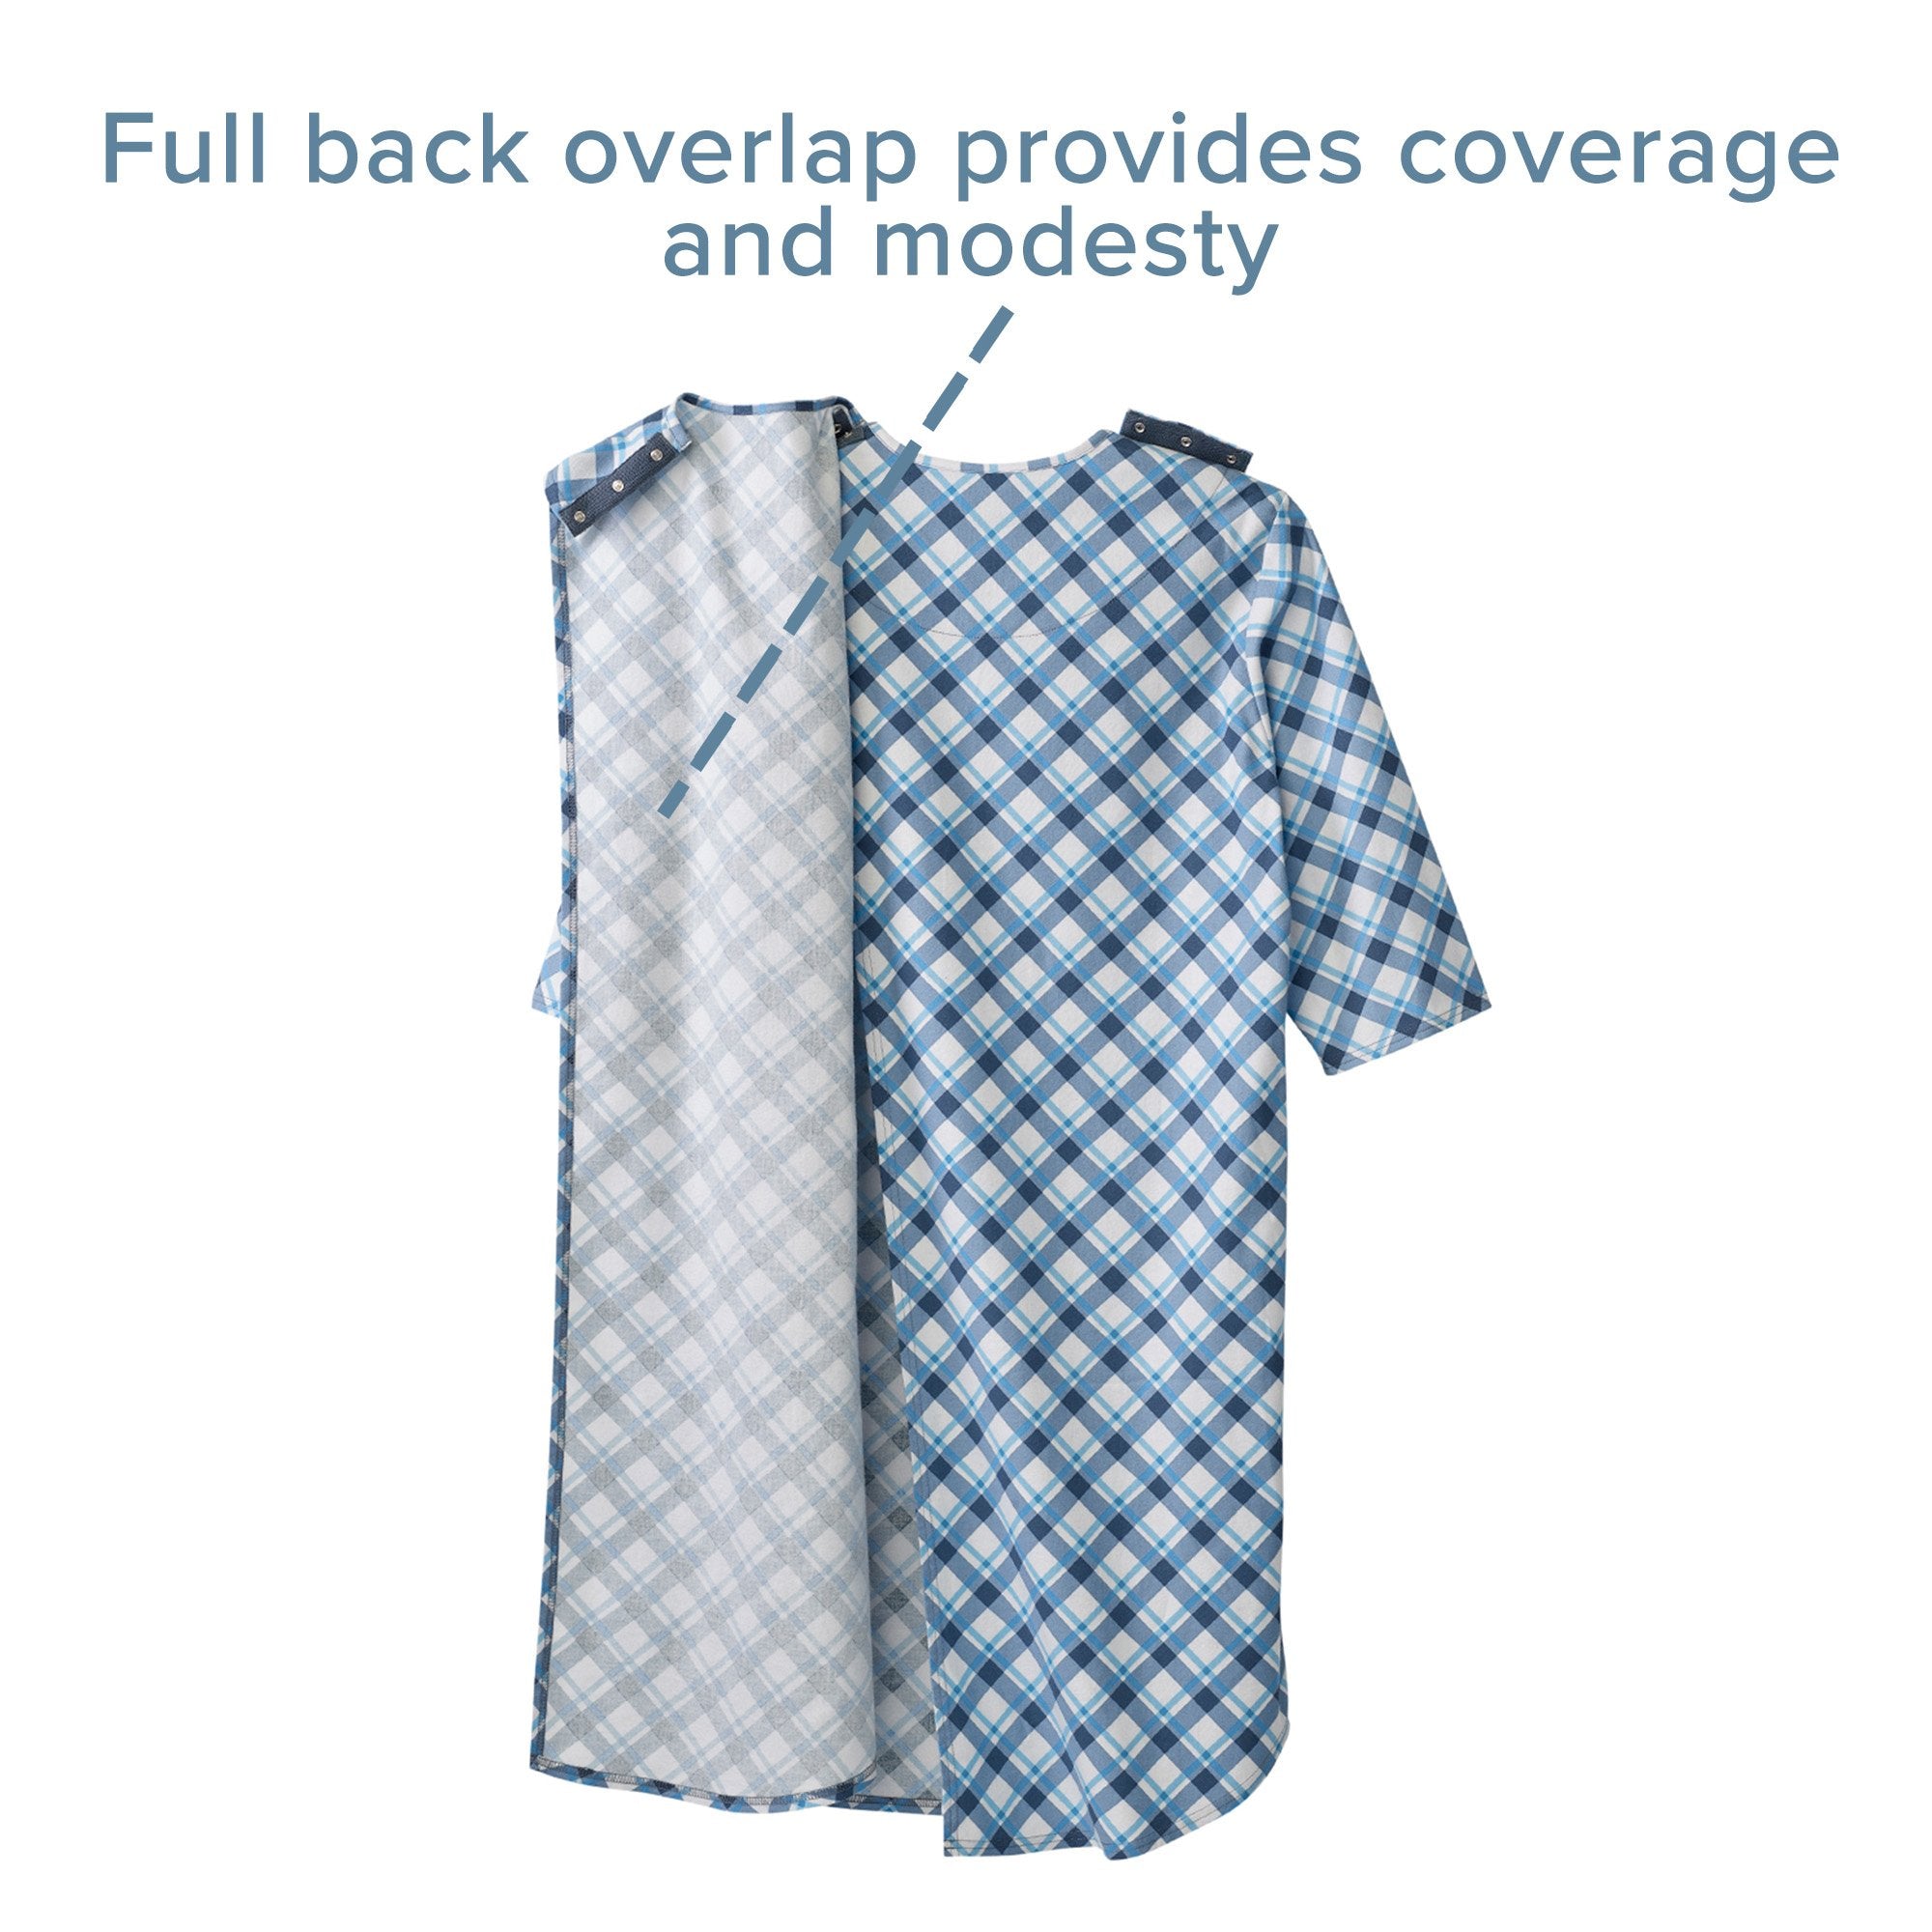 Silverts® Shoulder Snap Patient Exam Gown, 3X-Large, Diagonal Blue Plaid (1 Unit)